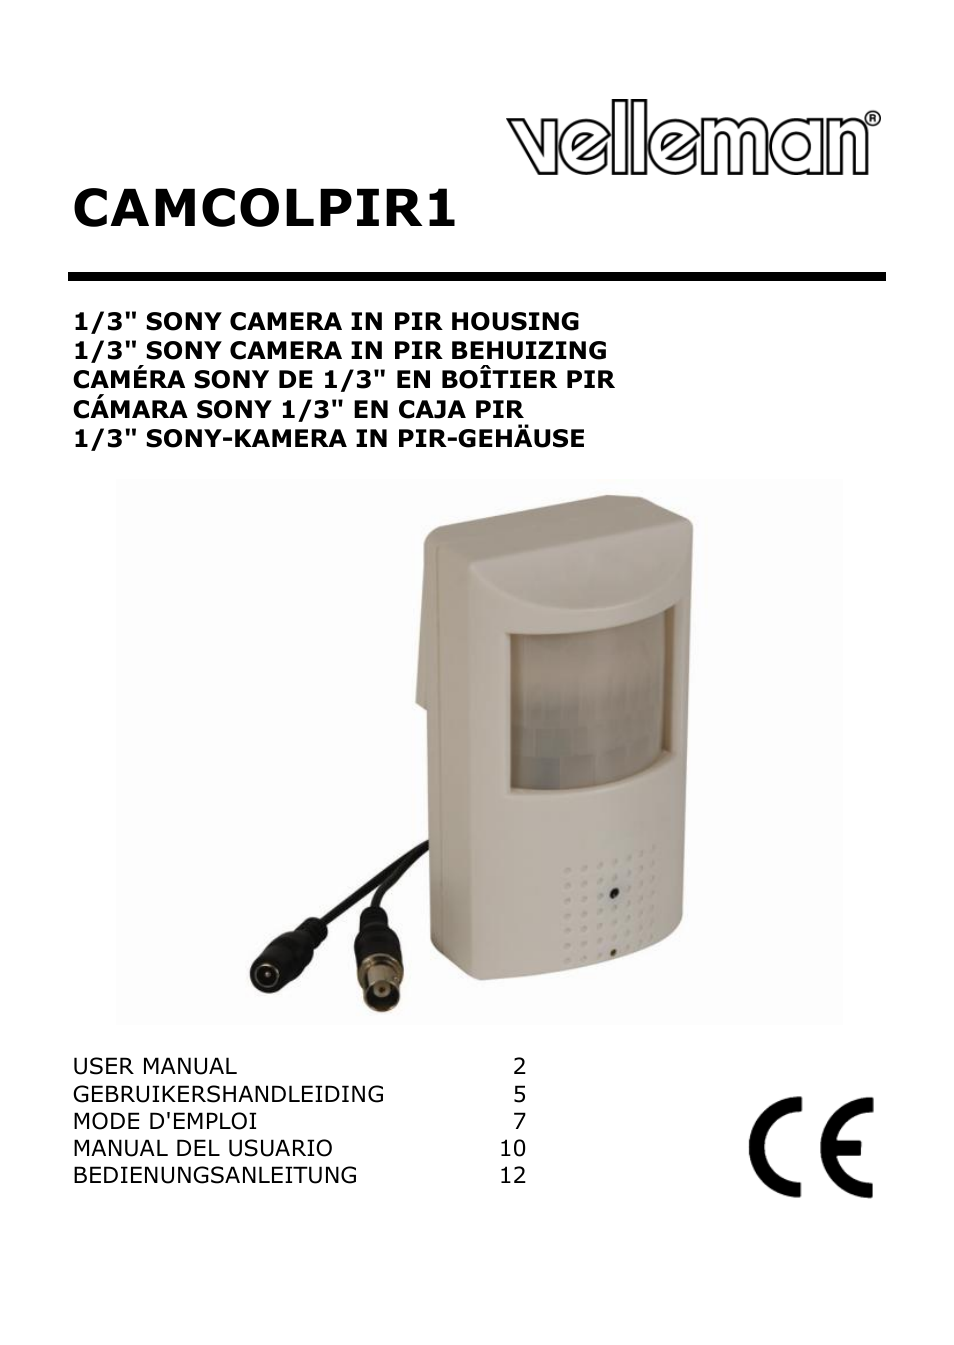 CAMCOLPIR1